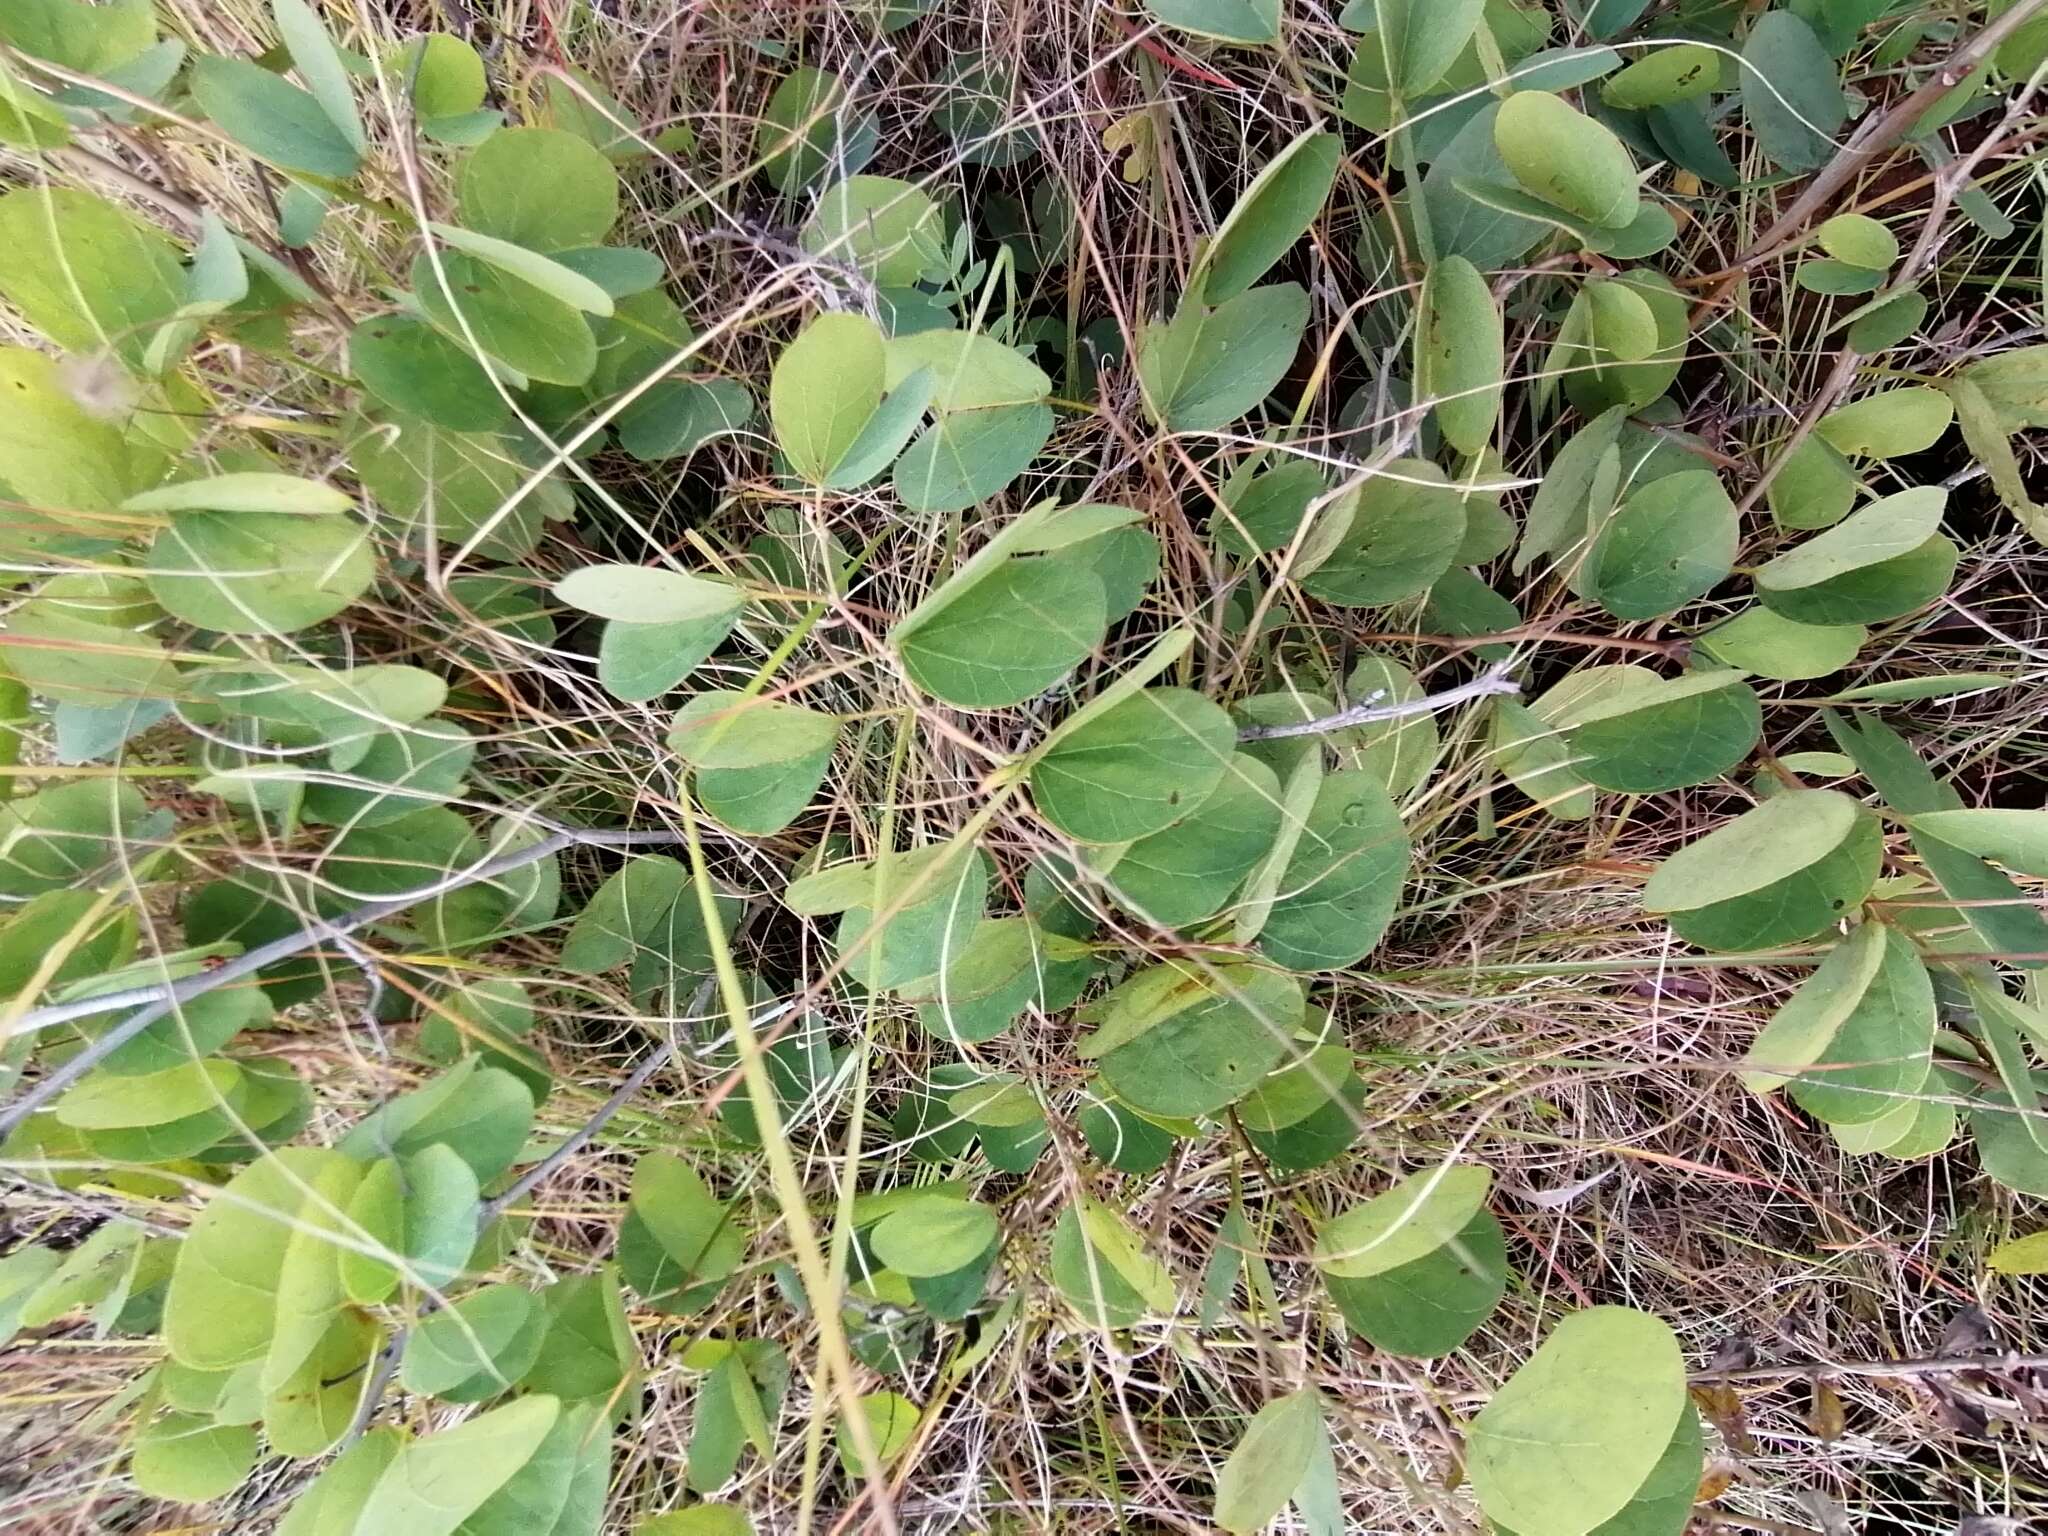 Sivun Tylosema esculentum (Burch.) A. Schreib. kuva